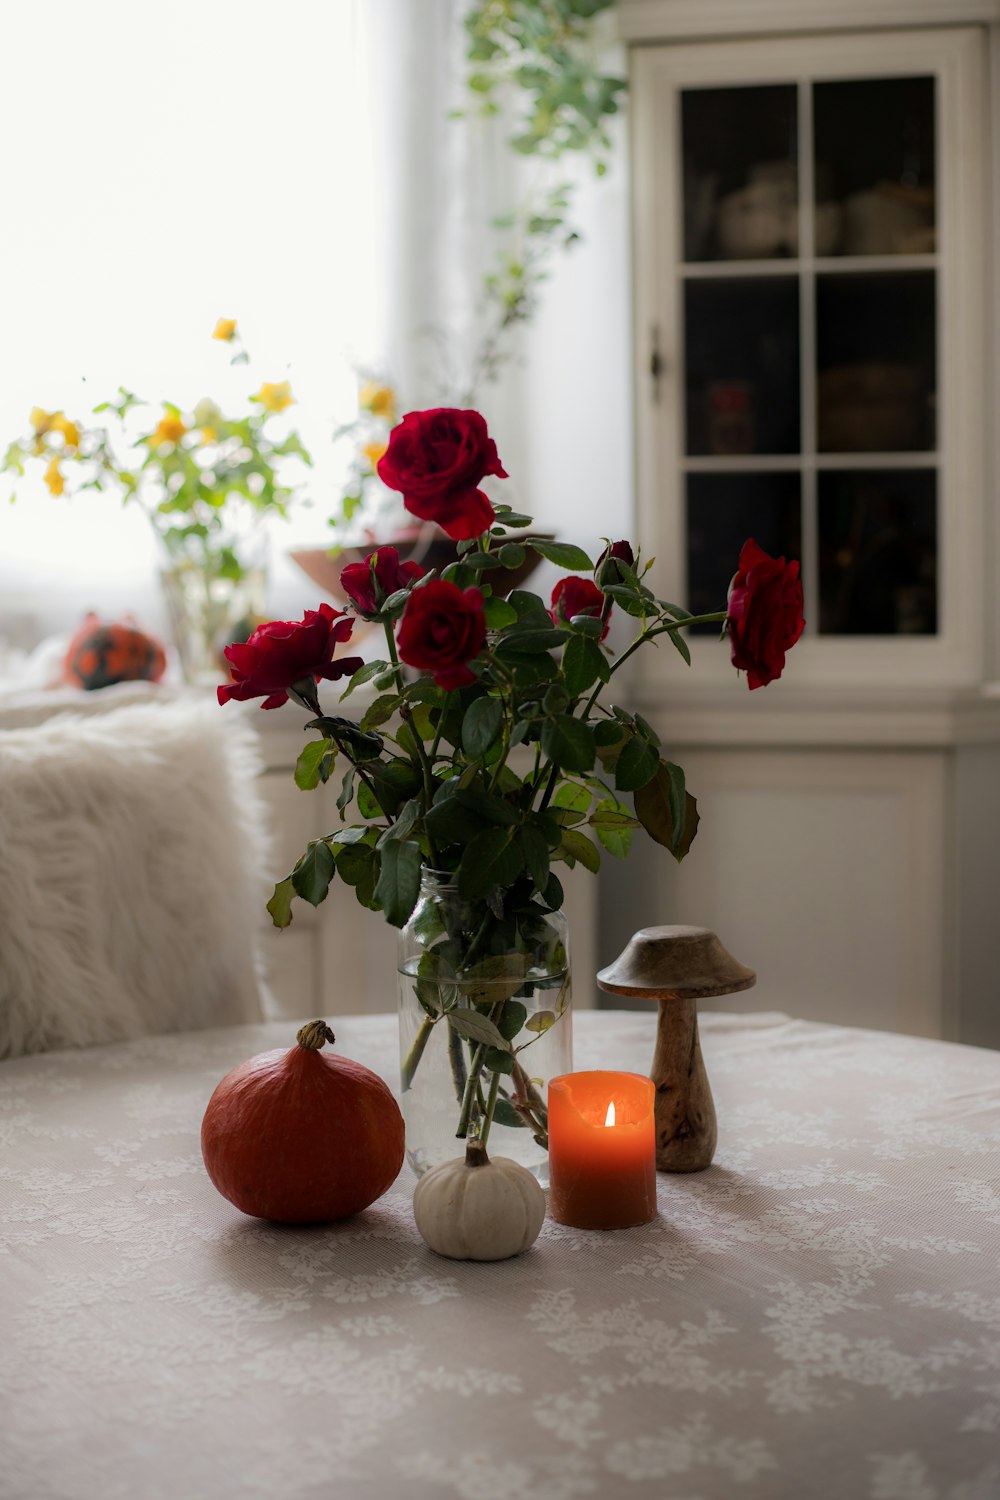 テーブルの上に置かれたバラの花瓶